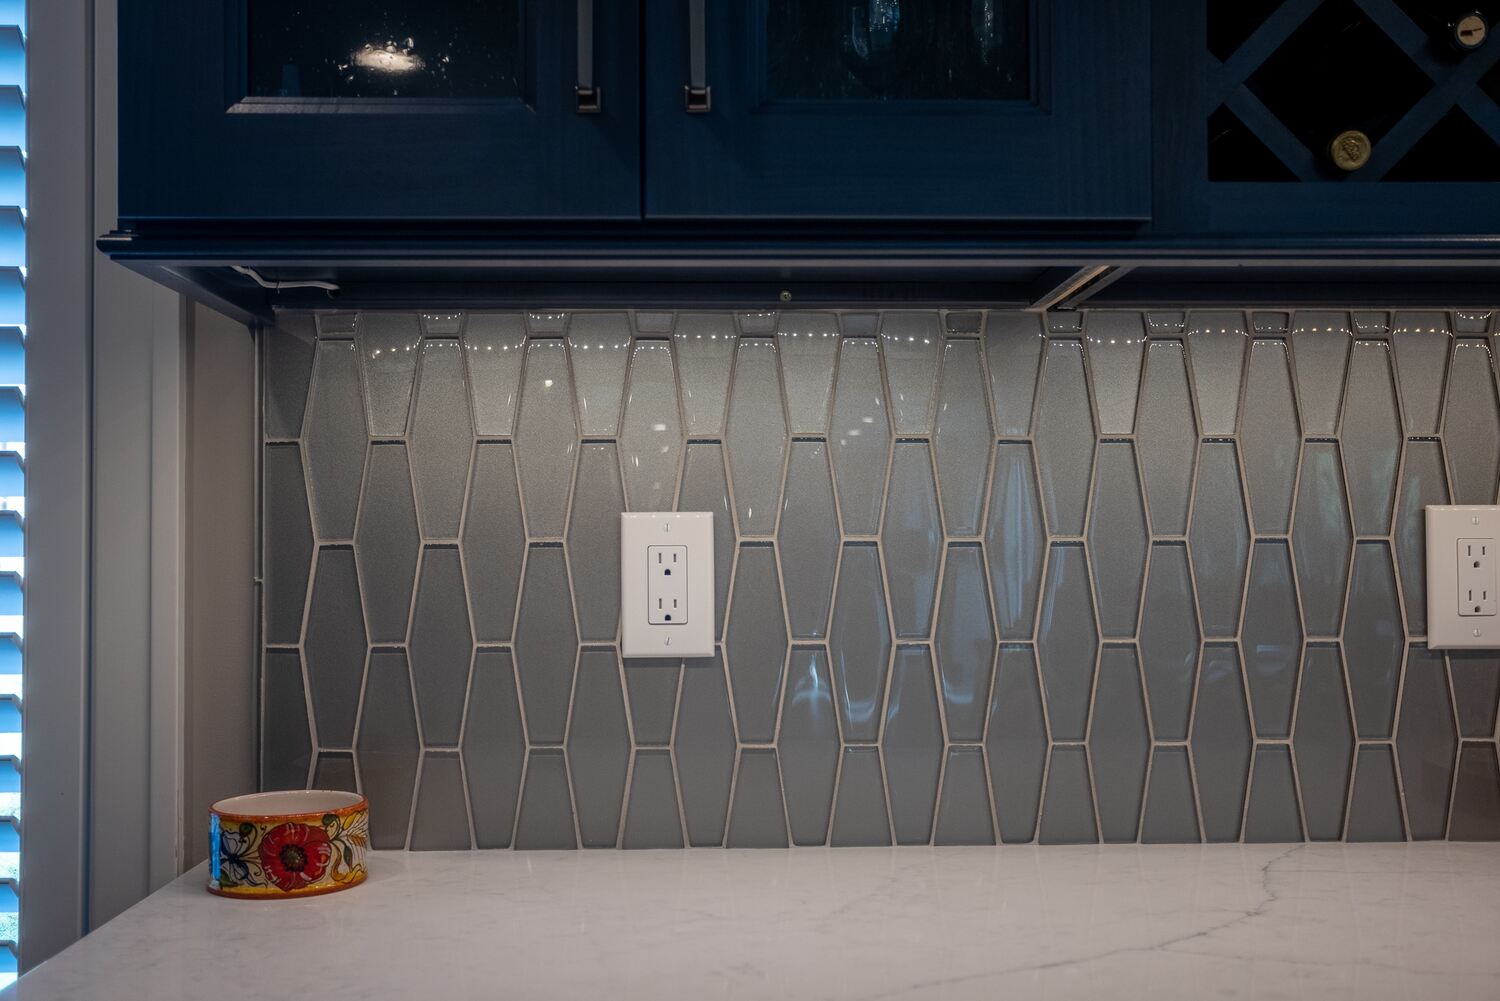 Modern kitchen tile backsplash below glass cabinetry